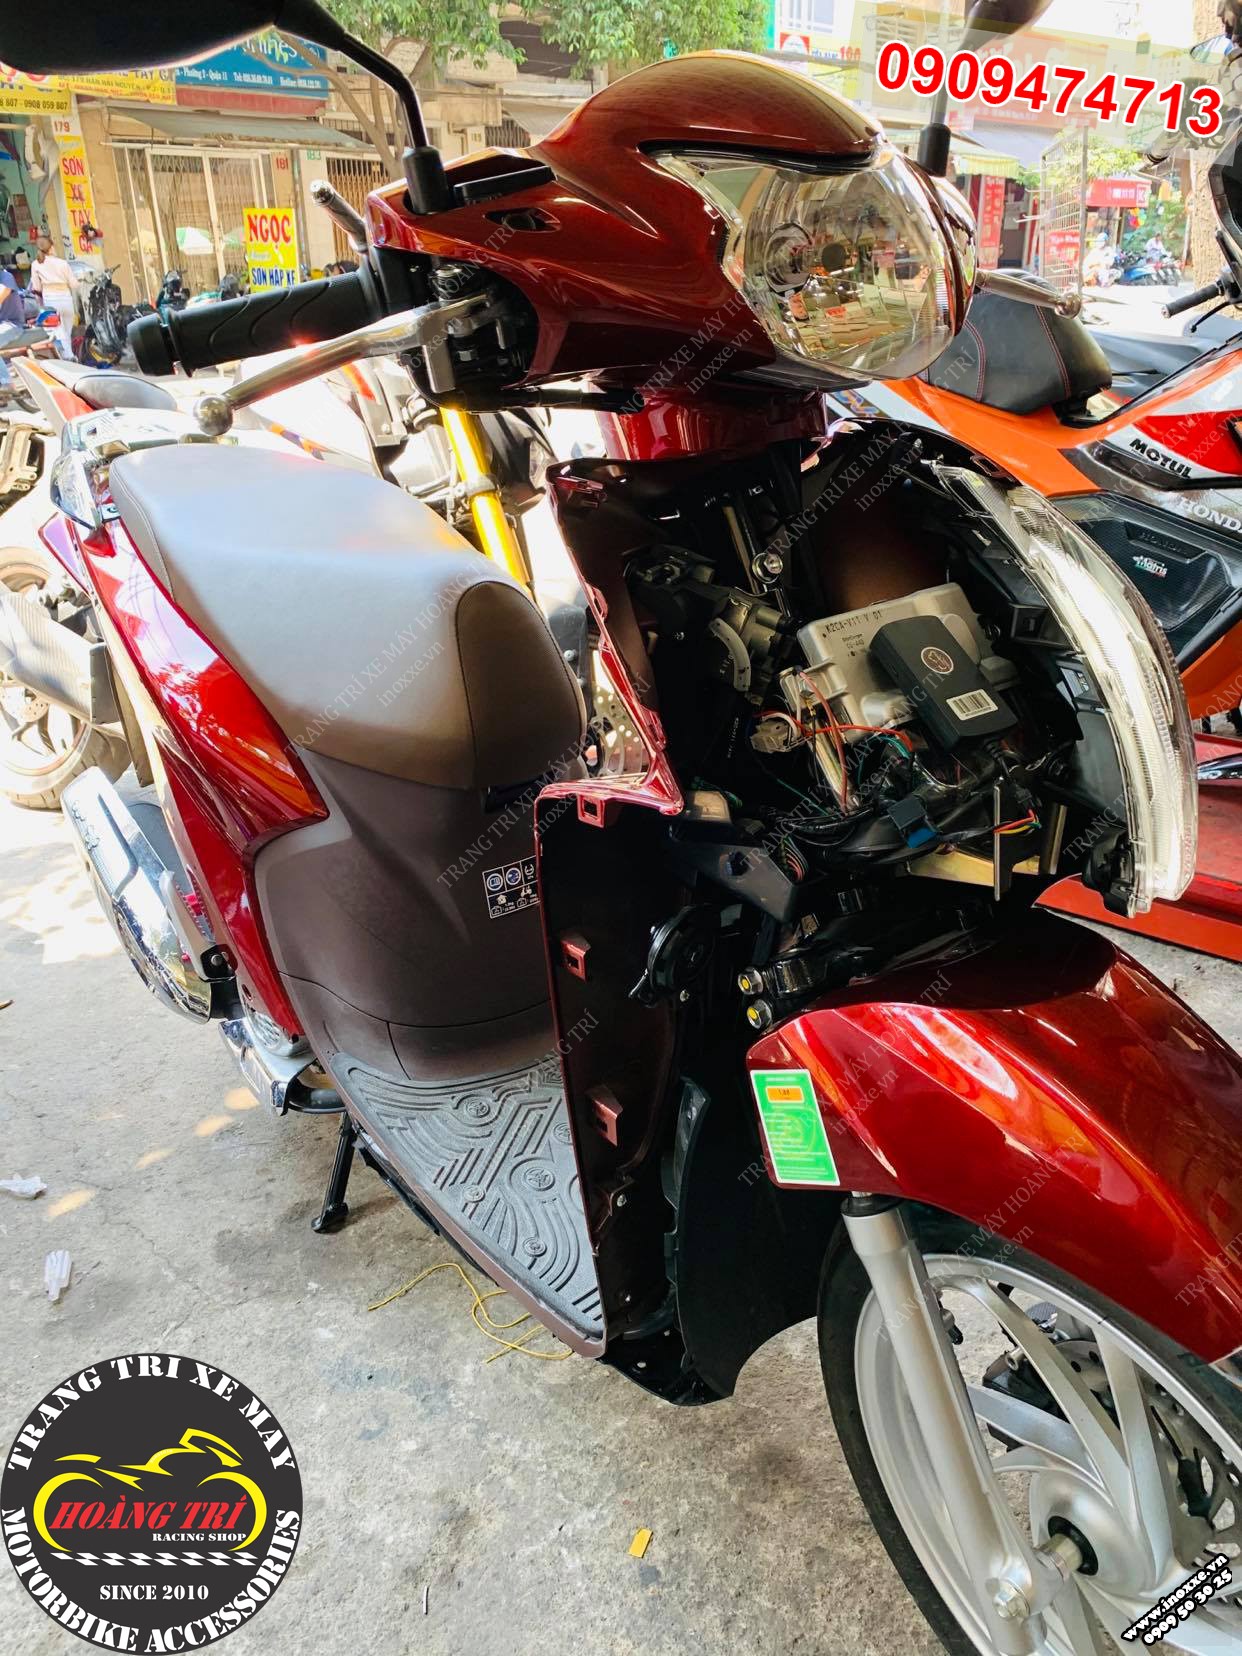 Hình ảnh chi tiết Kawasaki D-Tracker 150 2018 màu đen đỏ - Motosaigon